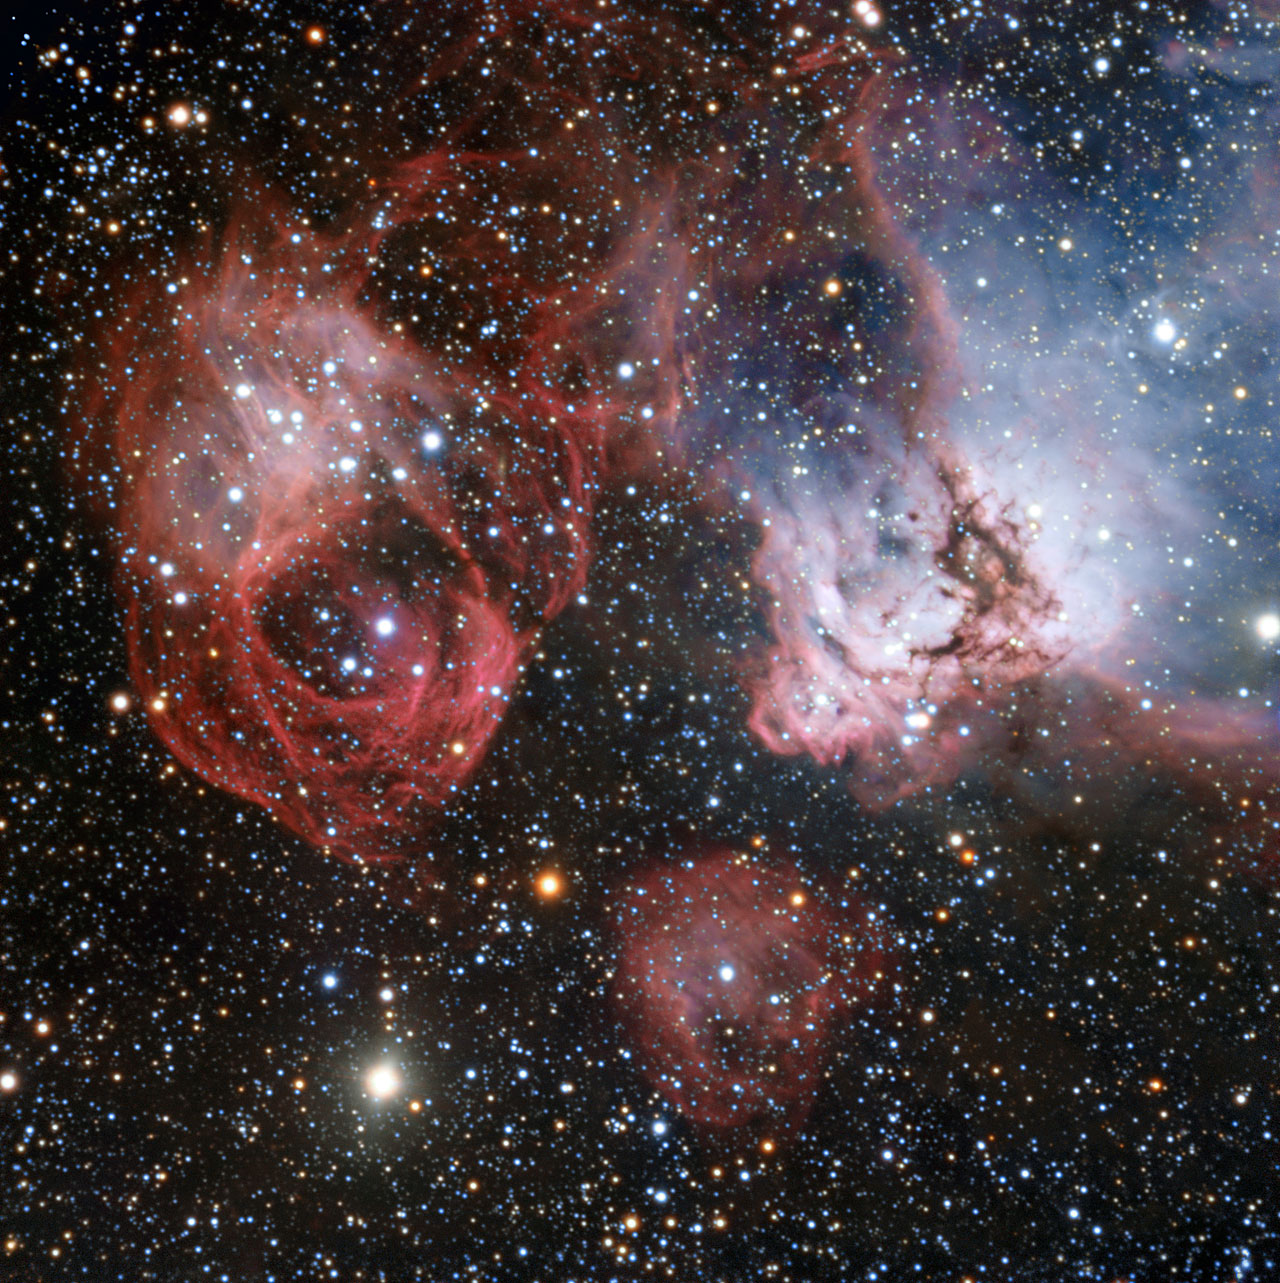 La región NGC 2035, perteneciente a la Gran Nube de Magallanes, a la derecha en la imagen. Fuente: ESO.